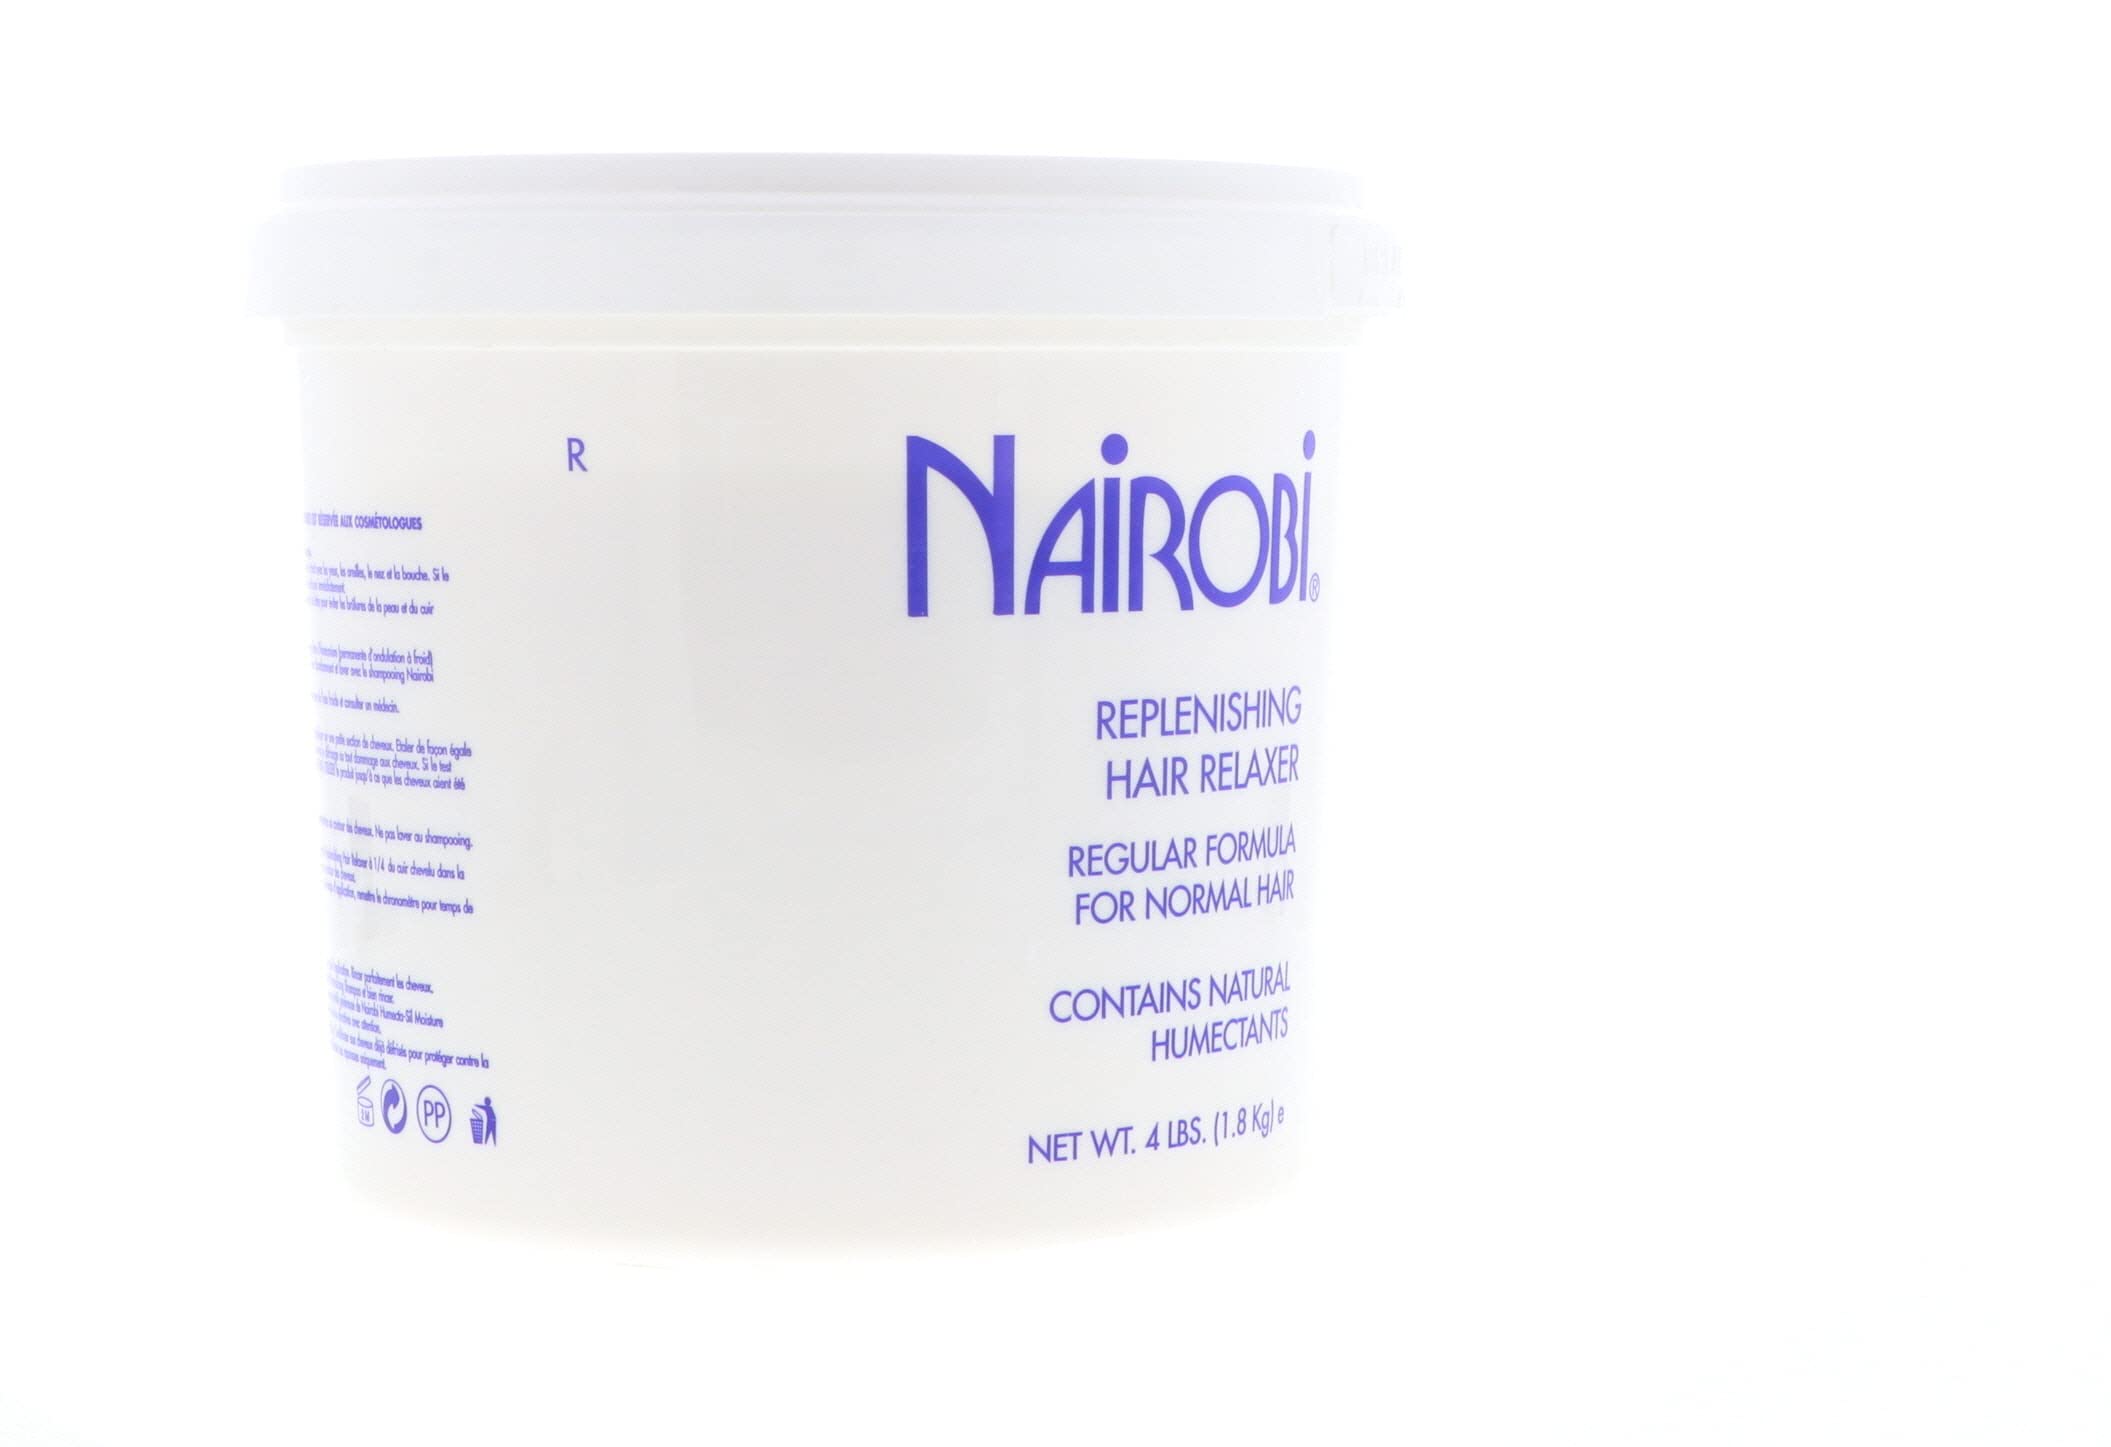 Nairobi Replenishing Hair Relaxer Regular Formula for Normal Hair 64 Fl